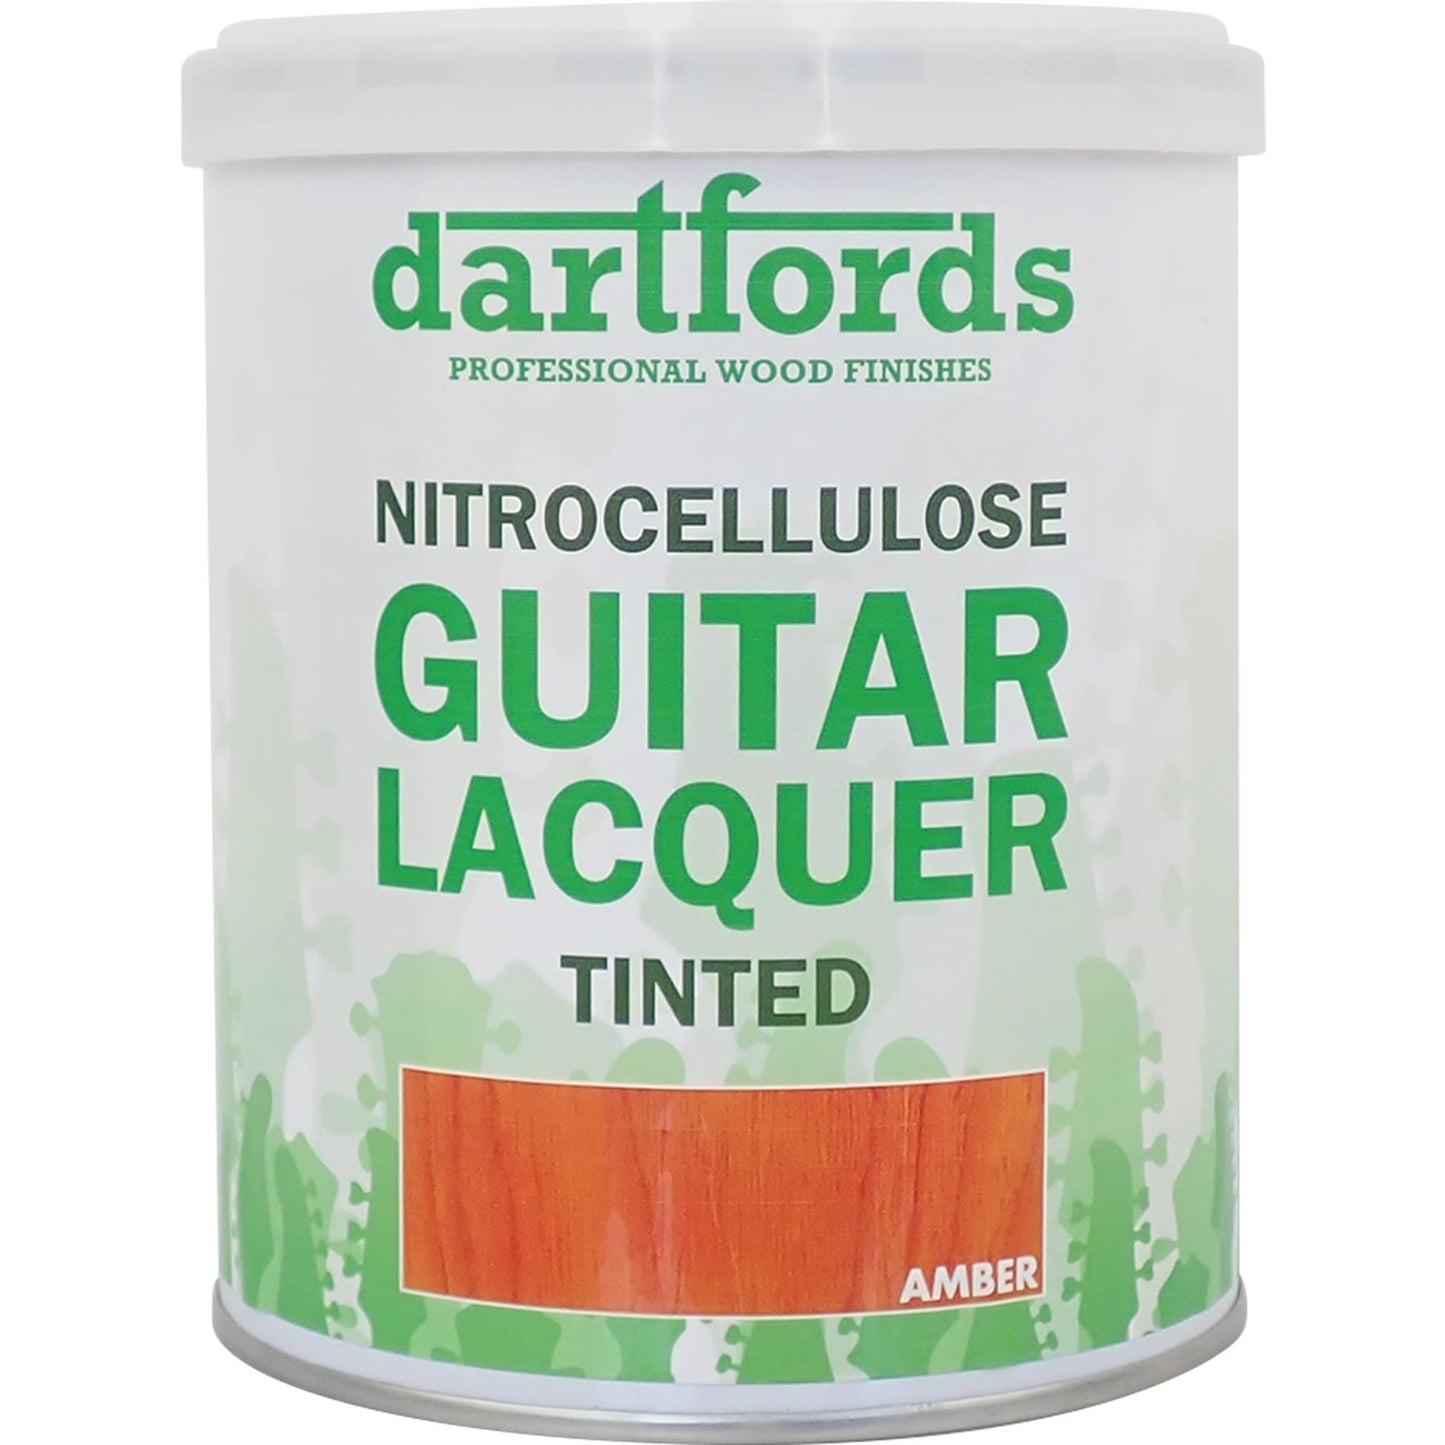 dartfords Amber Nitrocellulose Guitar Lacquer - 1 litre Tin